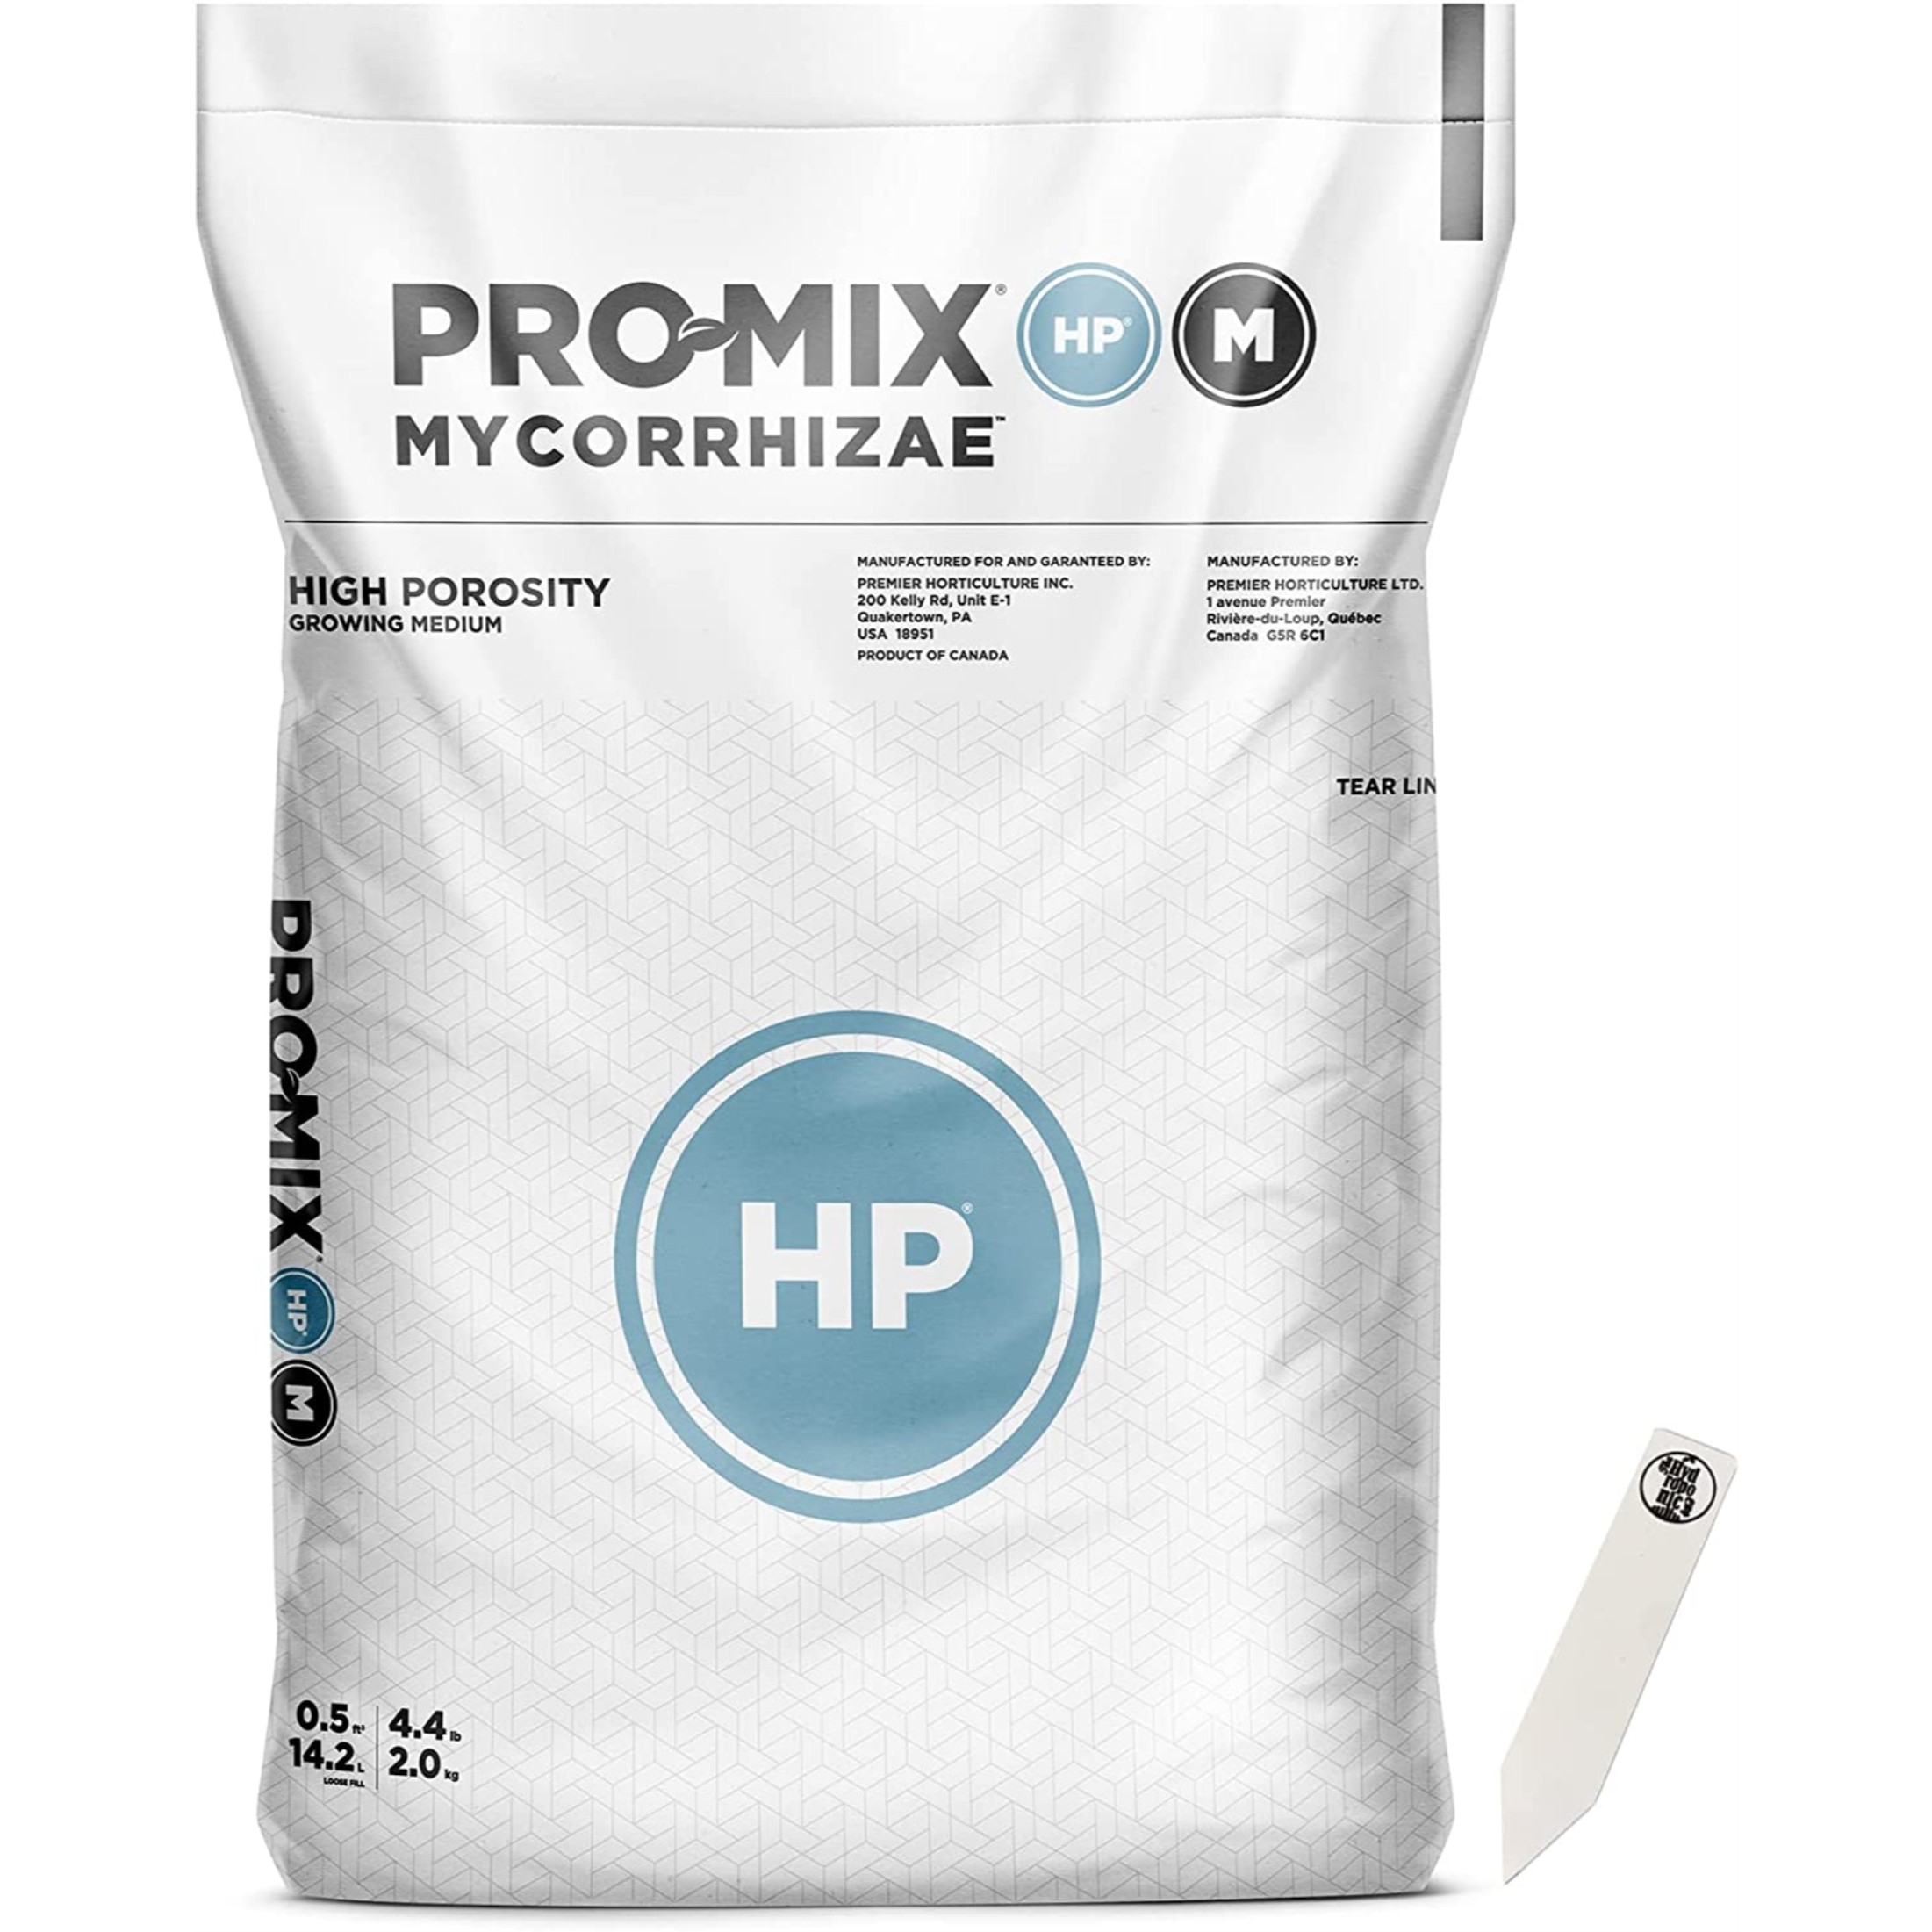 Pro-Mix HP Mycorrhizae Open Top Grow Bag, 0.5 CF